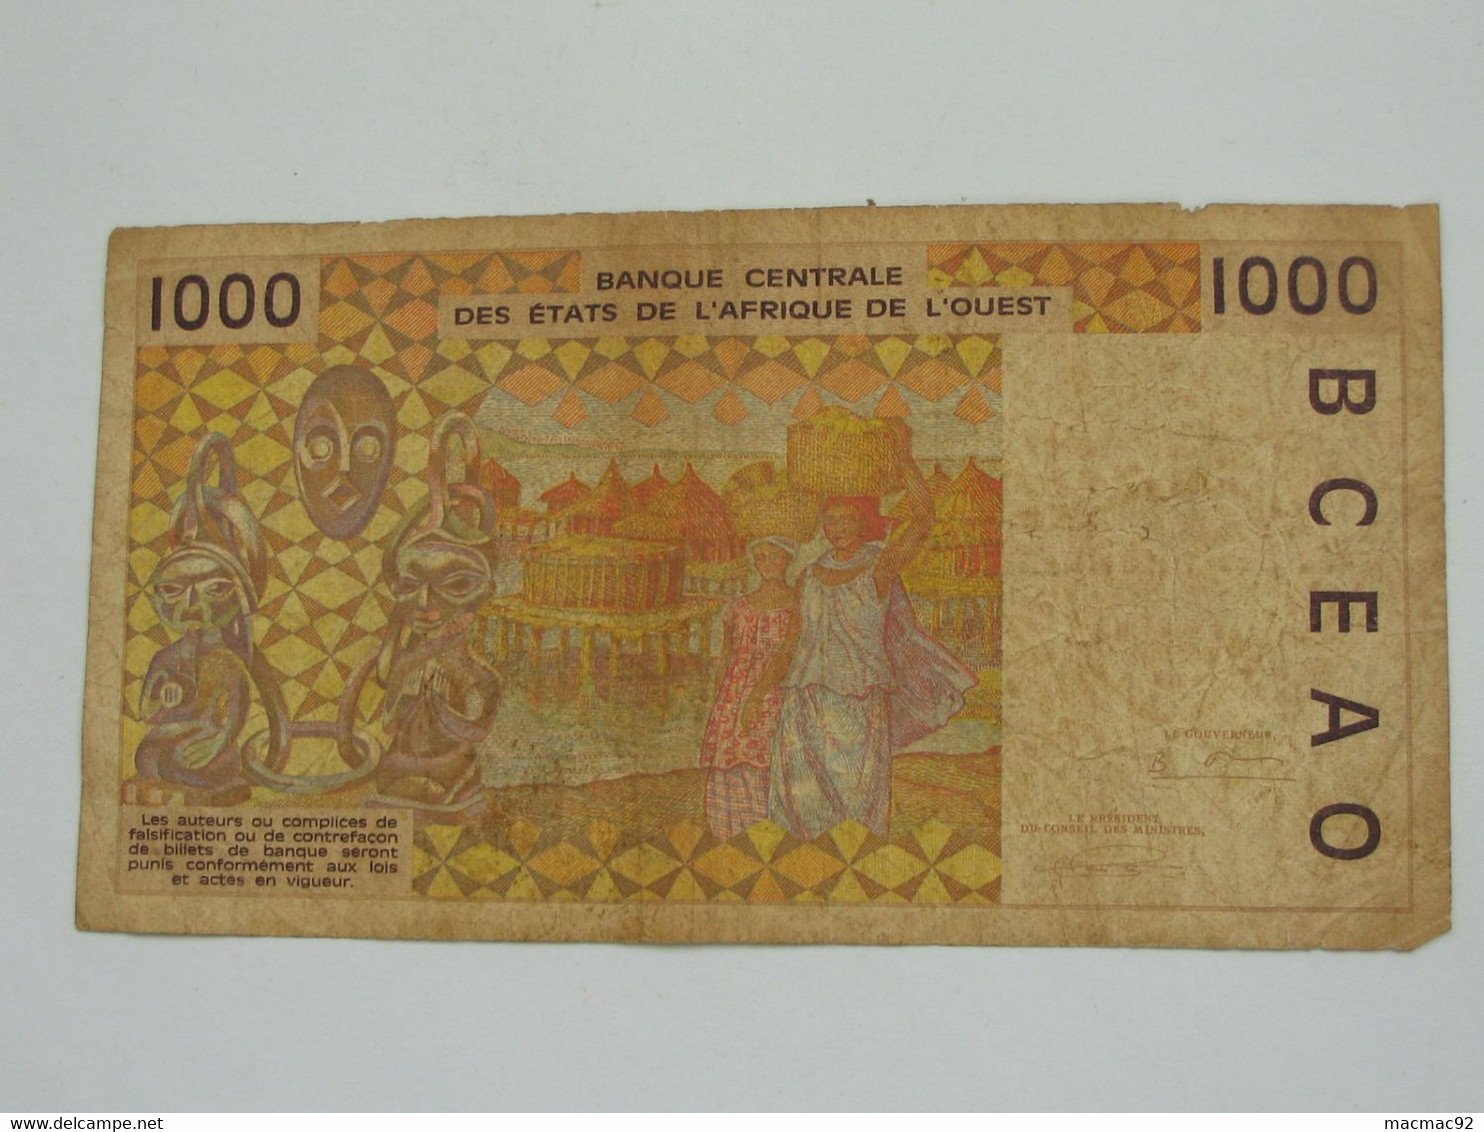 SENEGAL - 1000 Francs 1994 K - Banque Centrale Des Etats De L'Afrique De L'Ouest  **** EN ACHAT IMMEDIAT **** - Senegal